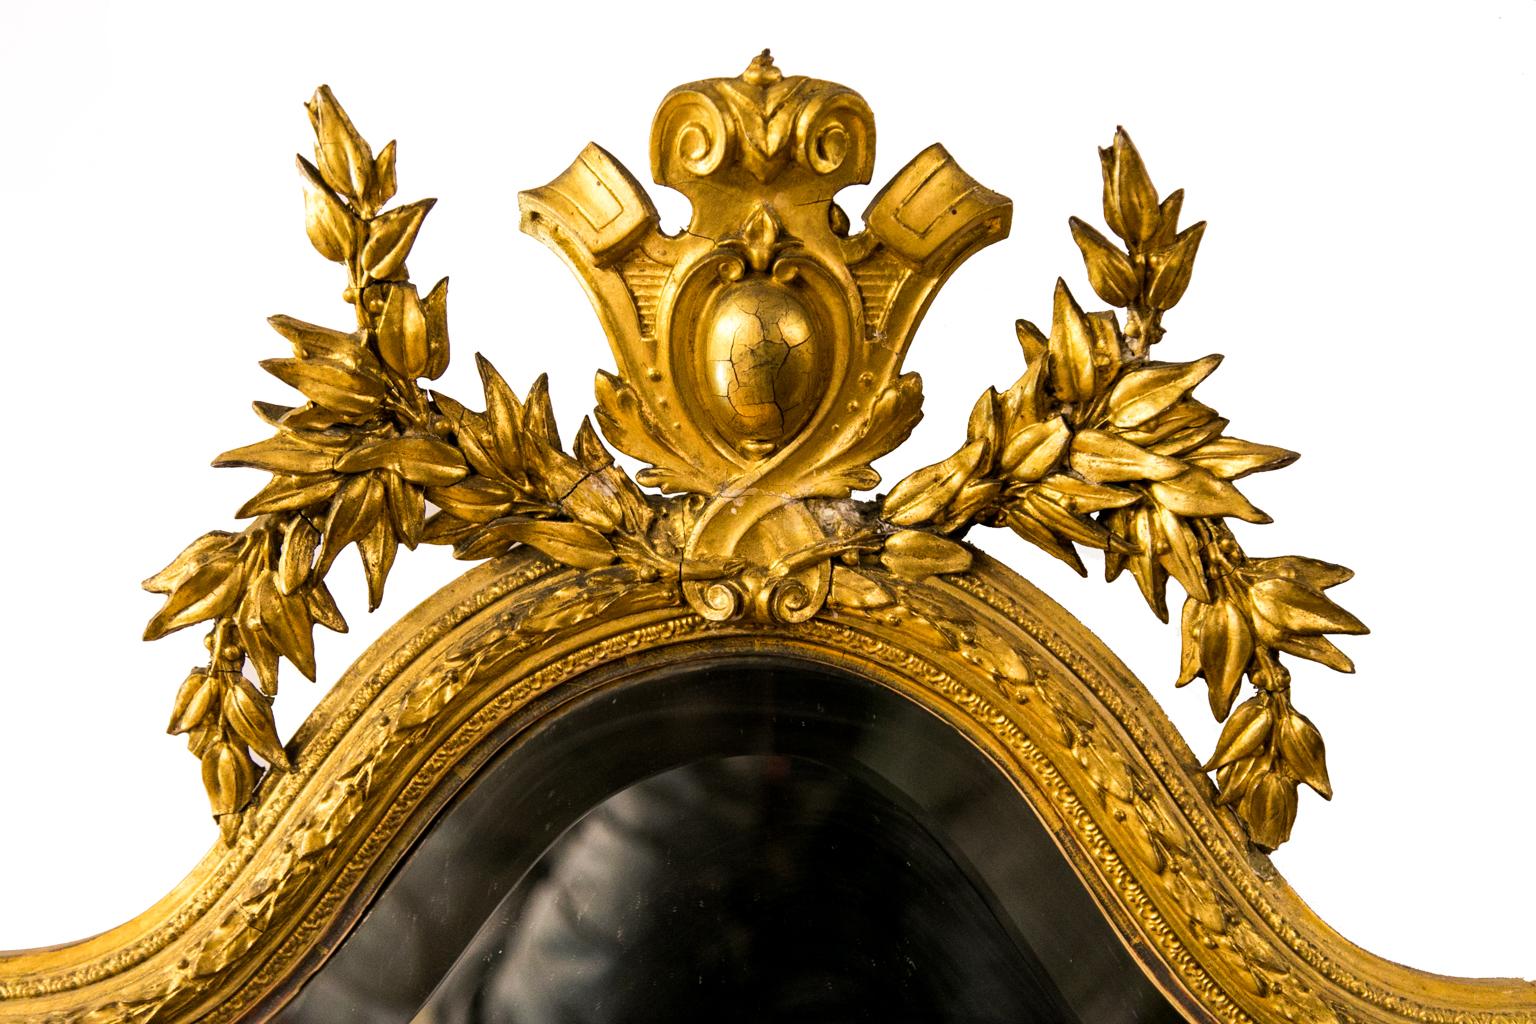 Le miroir Girandole anglais doré est biseauté et entouré de moulures de feuilles appliquées. Il est doté d'un grand écusson floral et d'une base.